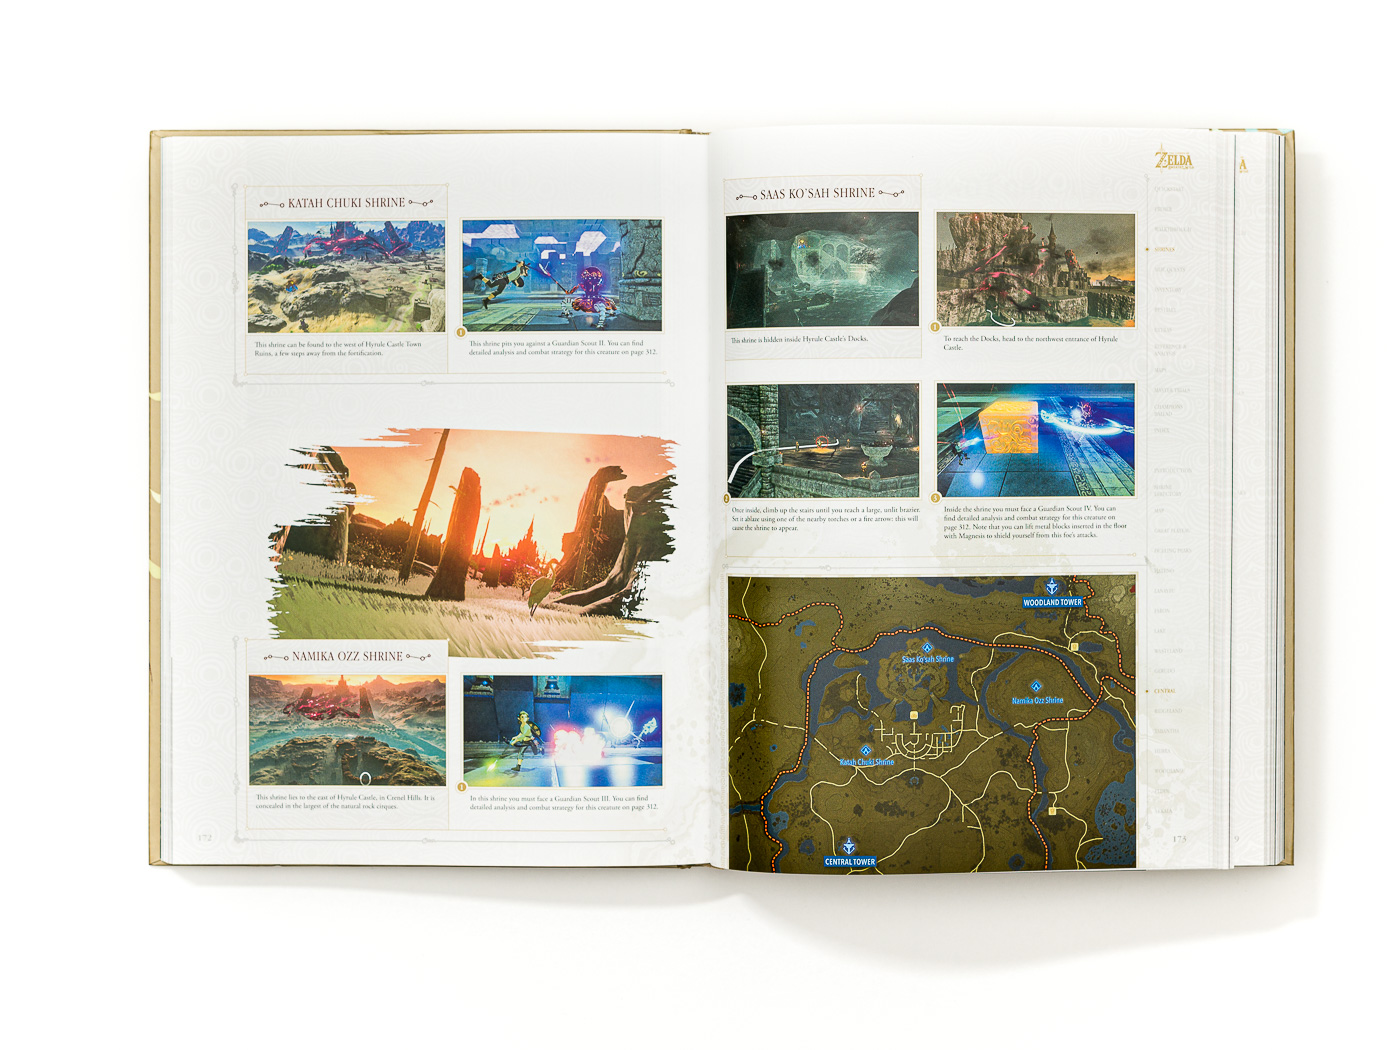 The Legend Of Zelda – Zelda Breath of the Wild Collector's Edition